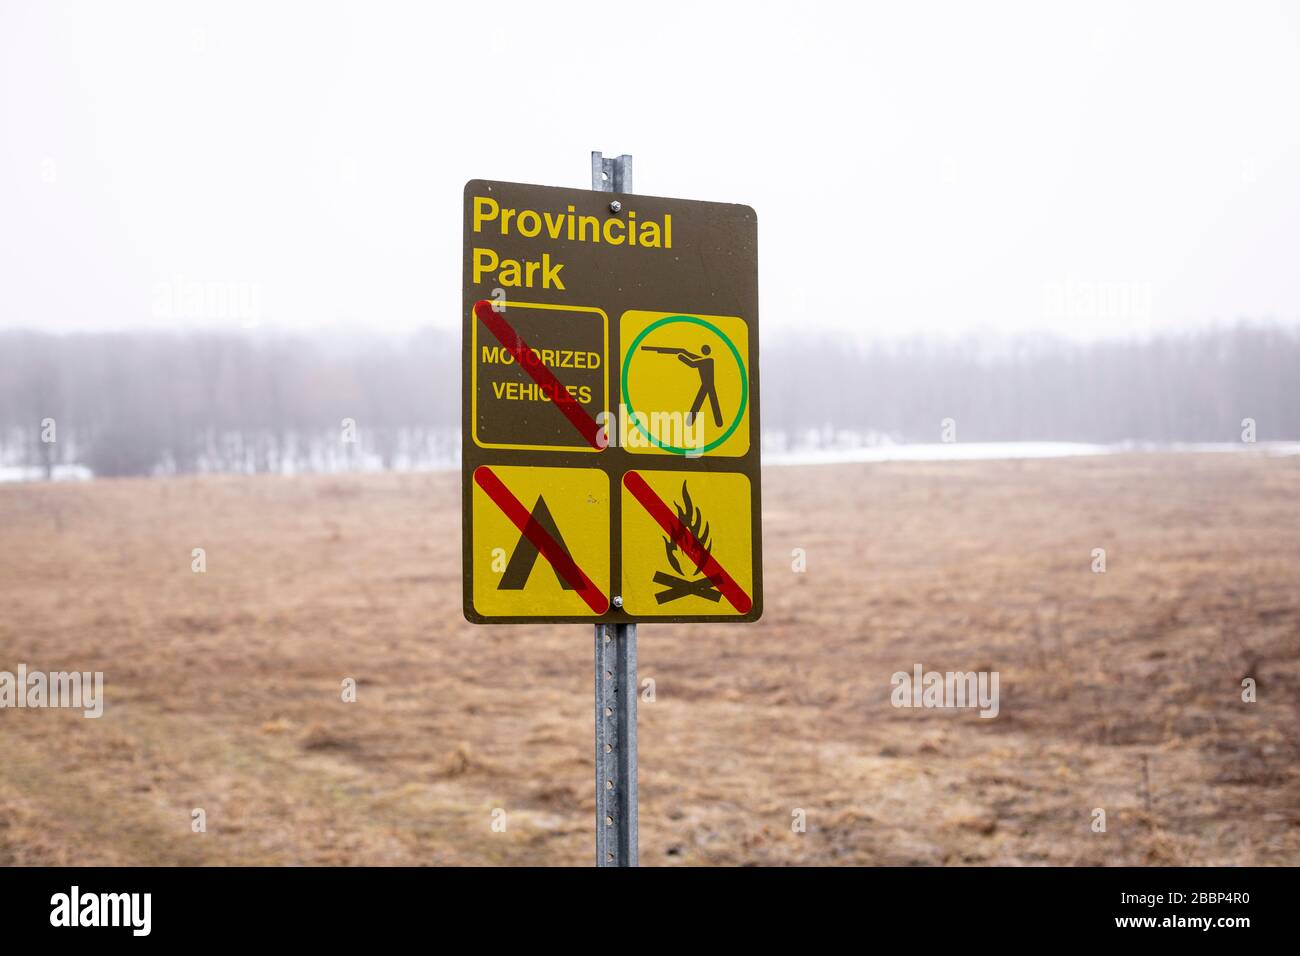 Un panneau indiquant que la chasse est autorisée, alors que les véhicules motorisés, les feux et le camping ne sont pas autorisés dans le parc provincial de Pretty River. Banque D'Images